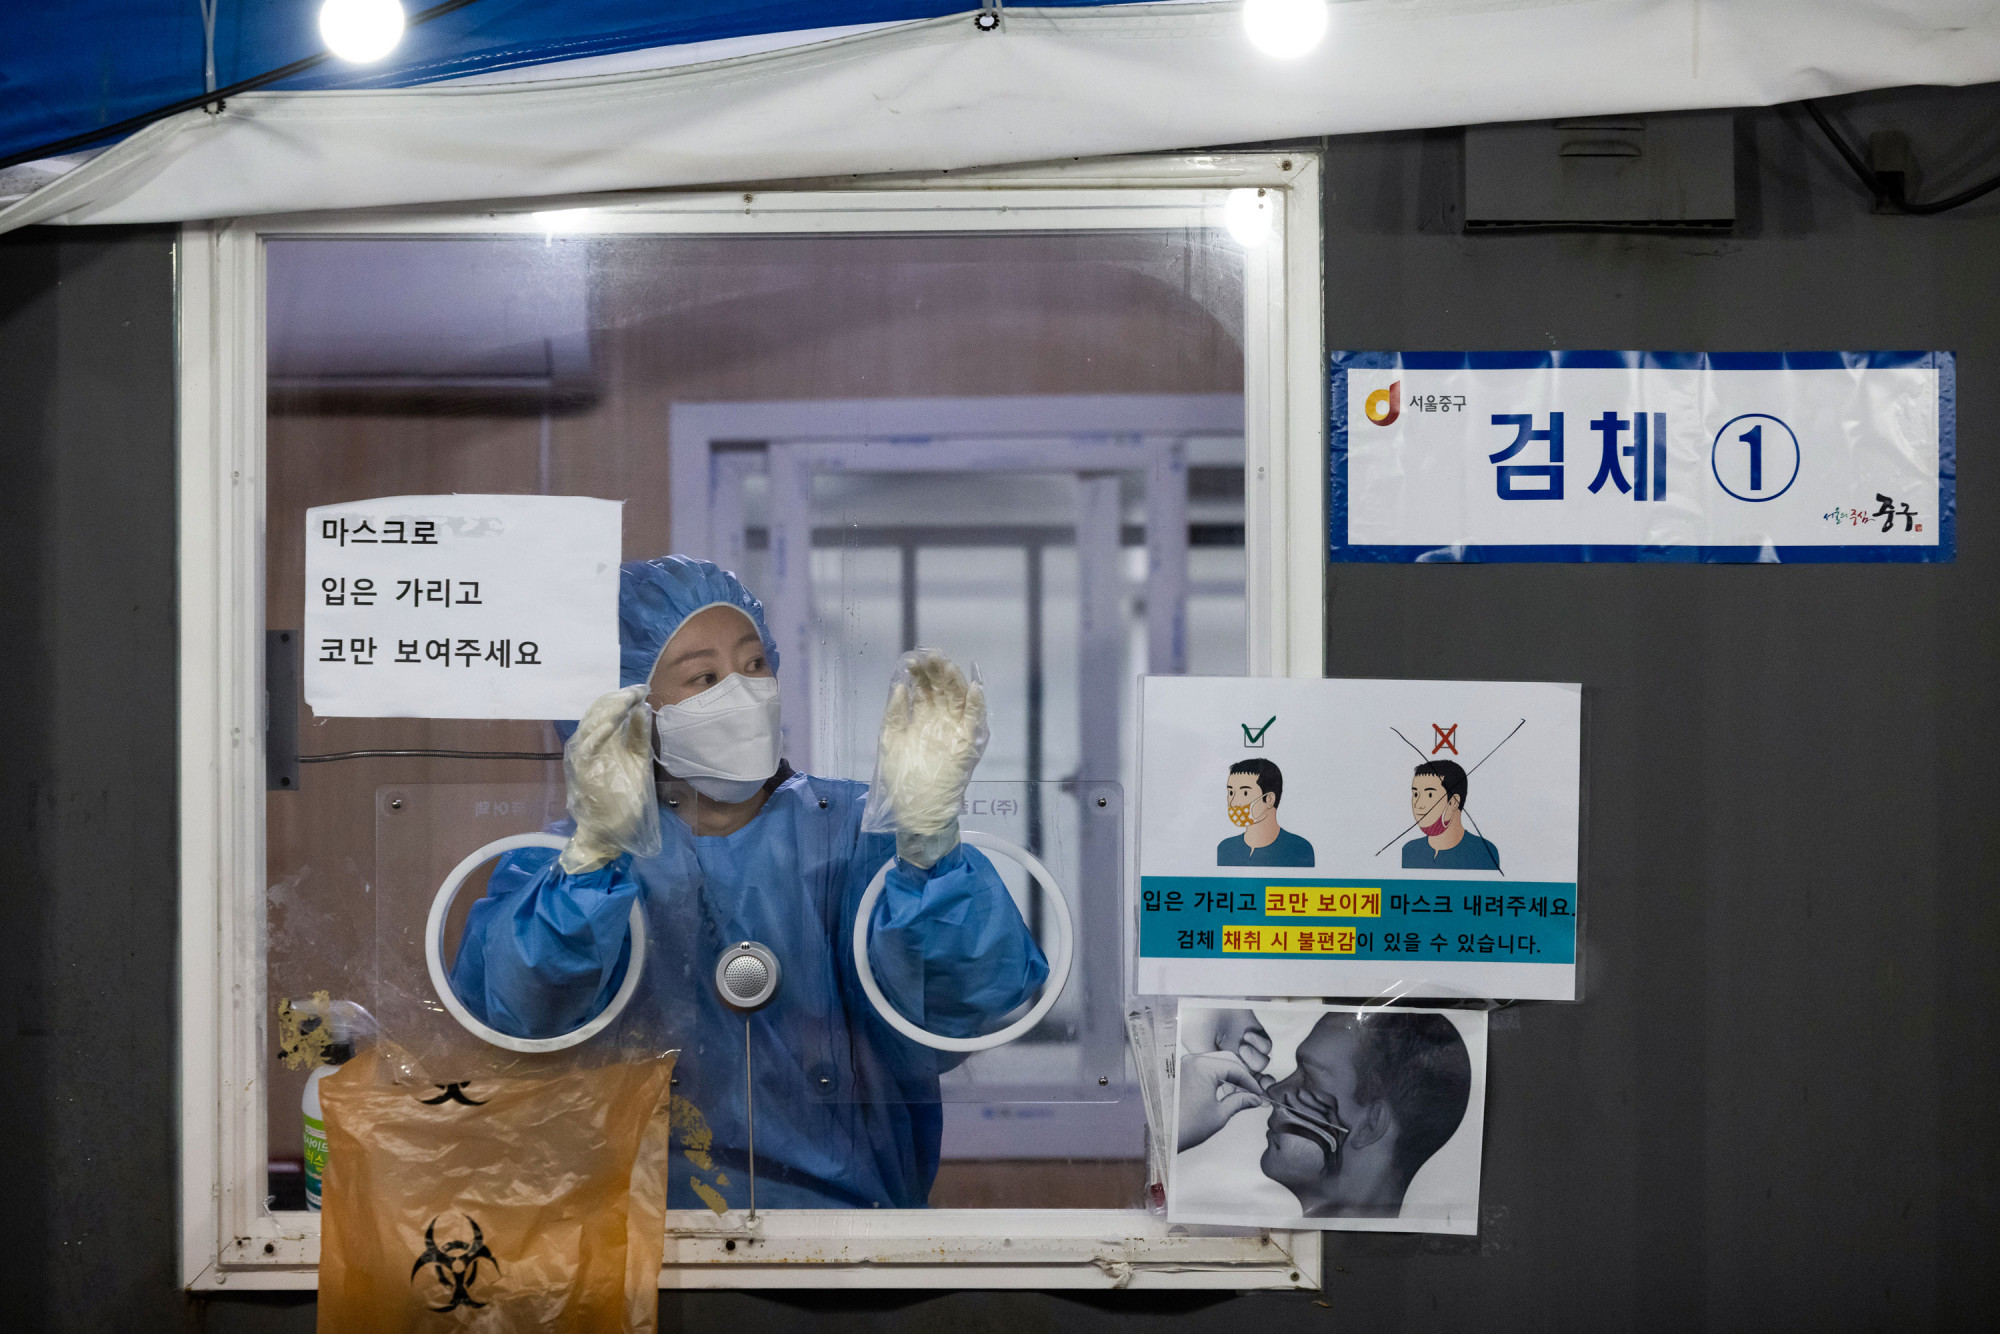 Một nhân viên y tế thực hiện xét nghiệm COVID-19 tại một địa điểm xét nghiệm tạm thời bên ngoài ga tàu ở Seoul, Hàn Quốc, vào ngày 30/11 